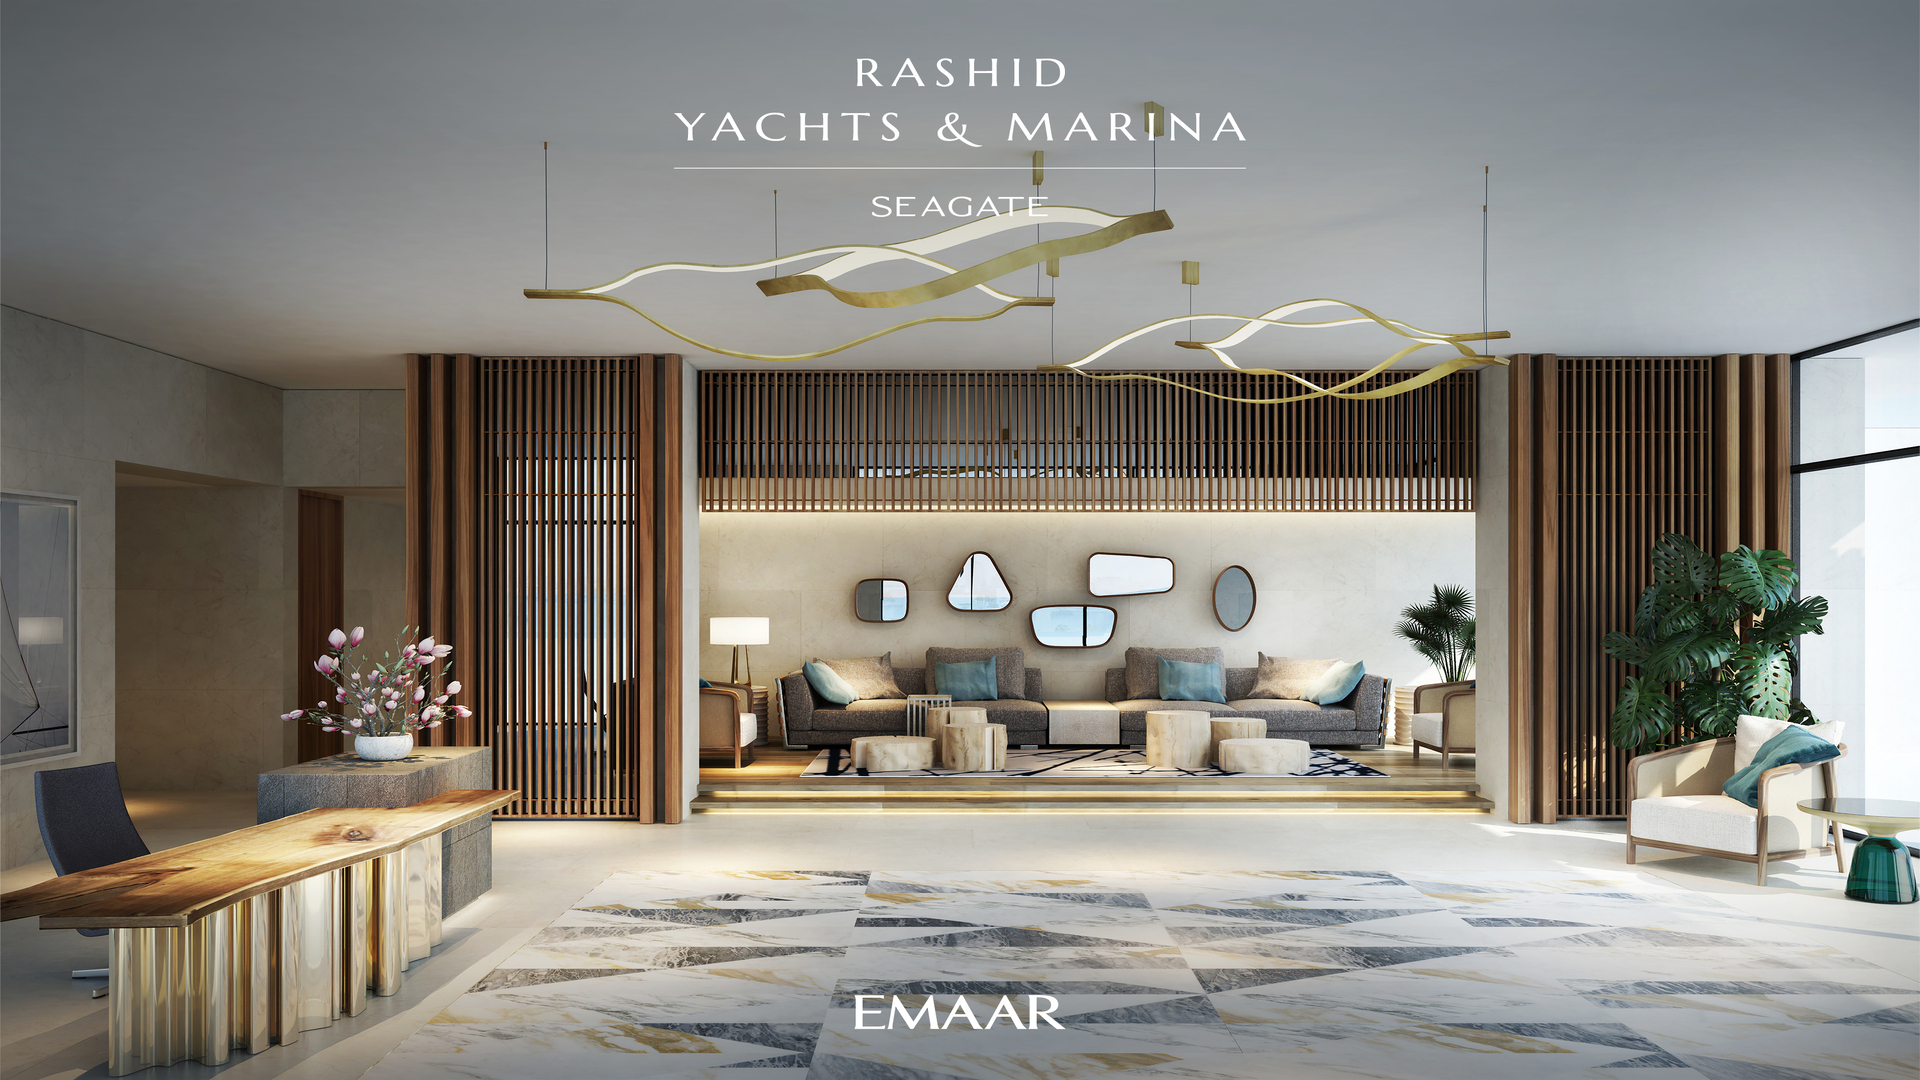 Seagate Rashid Yachts & Marina in Mina Rashid by Emaar